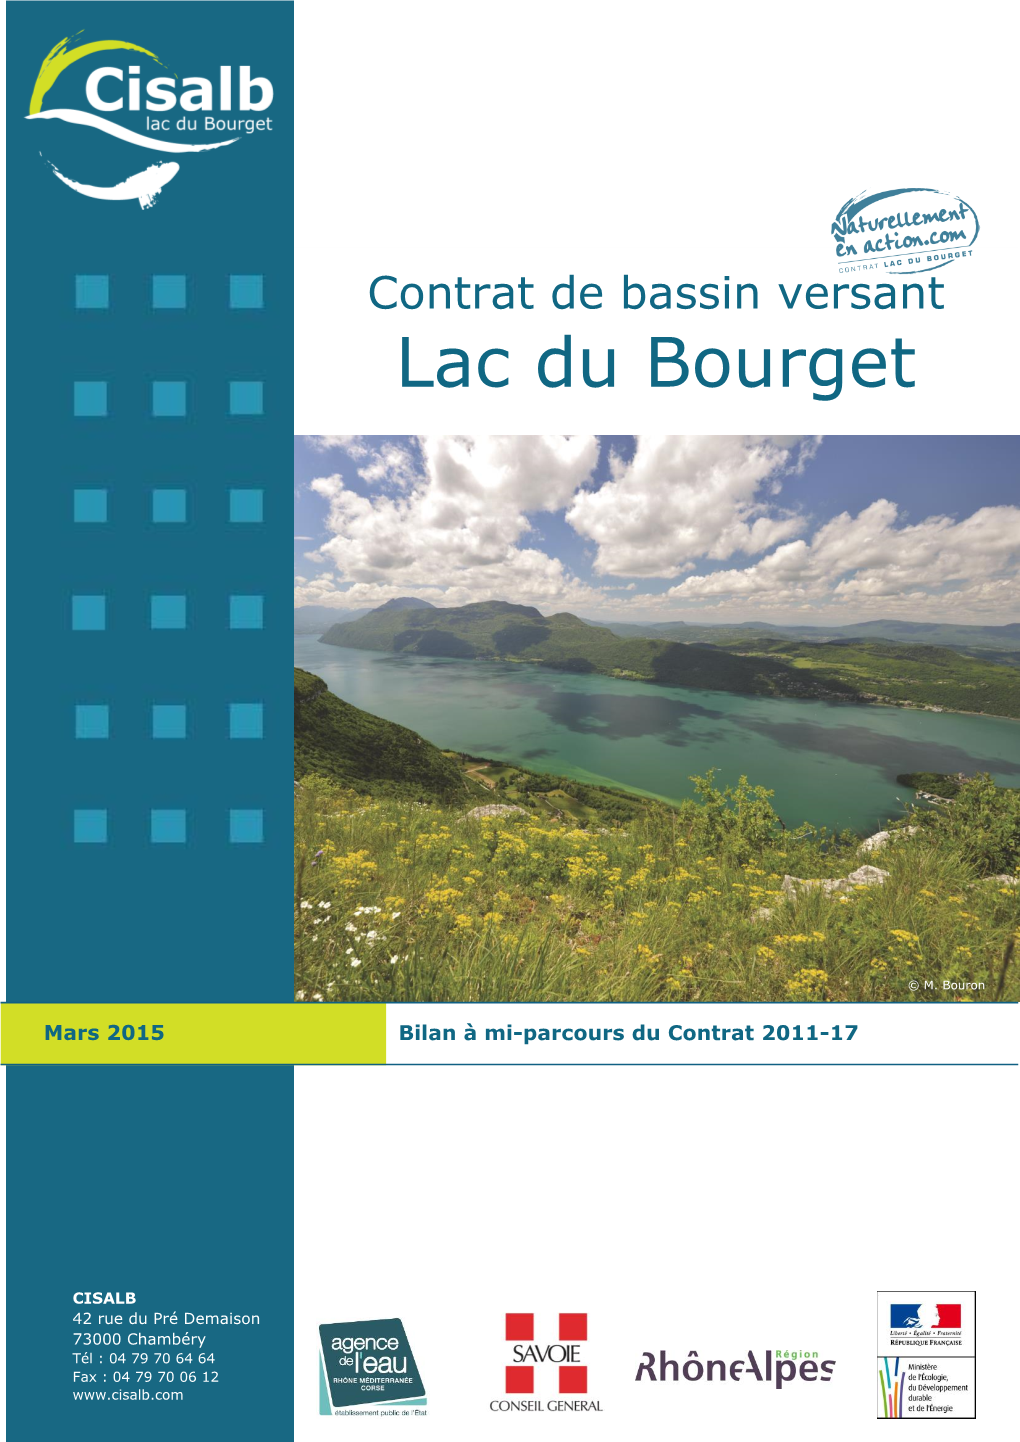 Lac Du Bourget